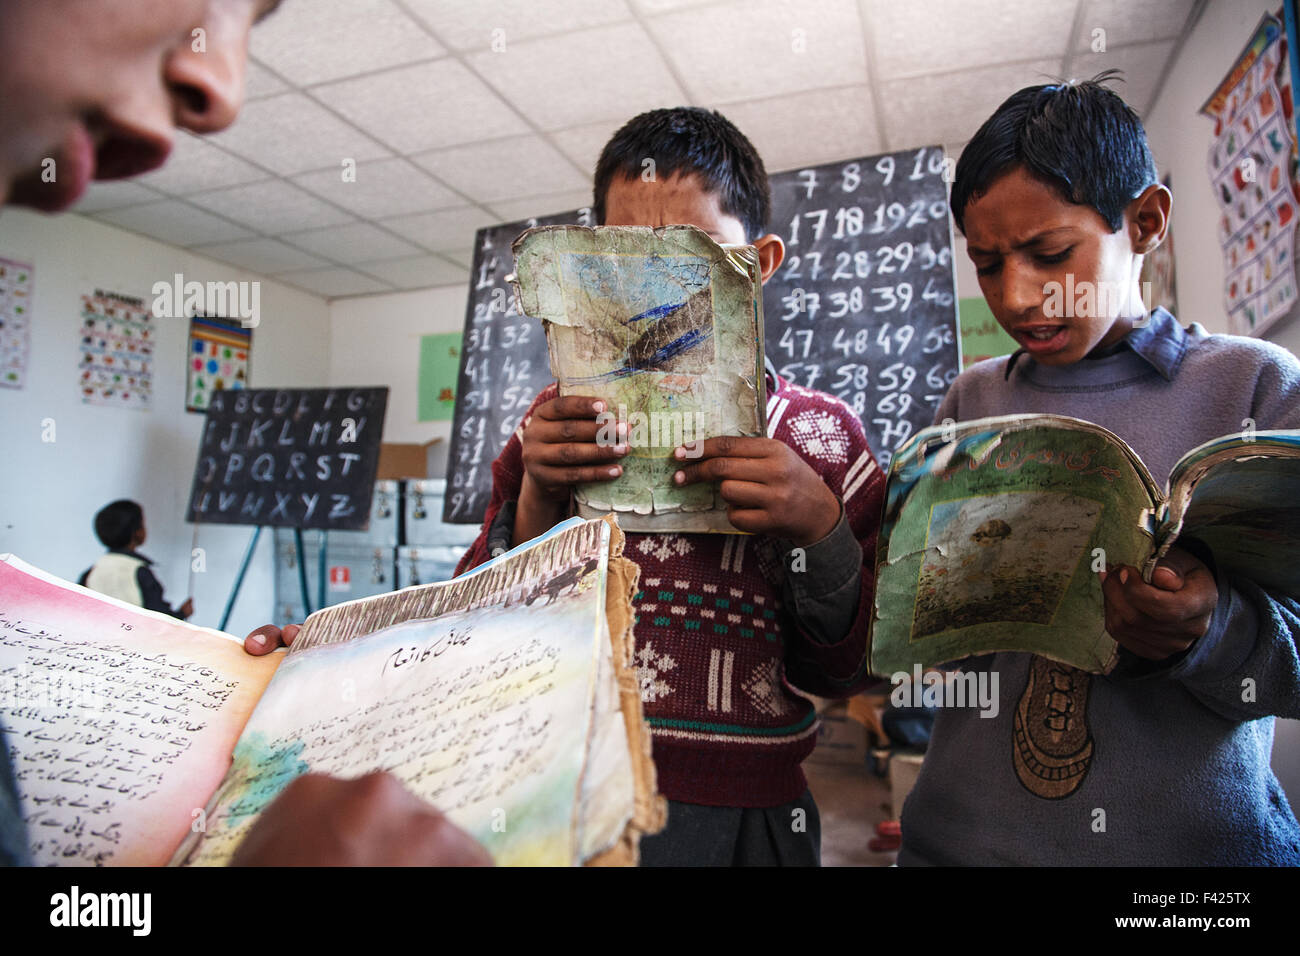 Younf alumnos la lectura de los libros de texto durante una clase en una escuela primaria cerca de Muzaffarabad, en Cachemira, en Pakistán. Foto de stock